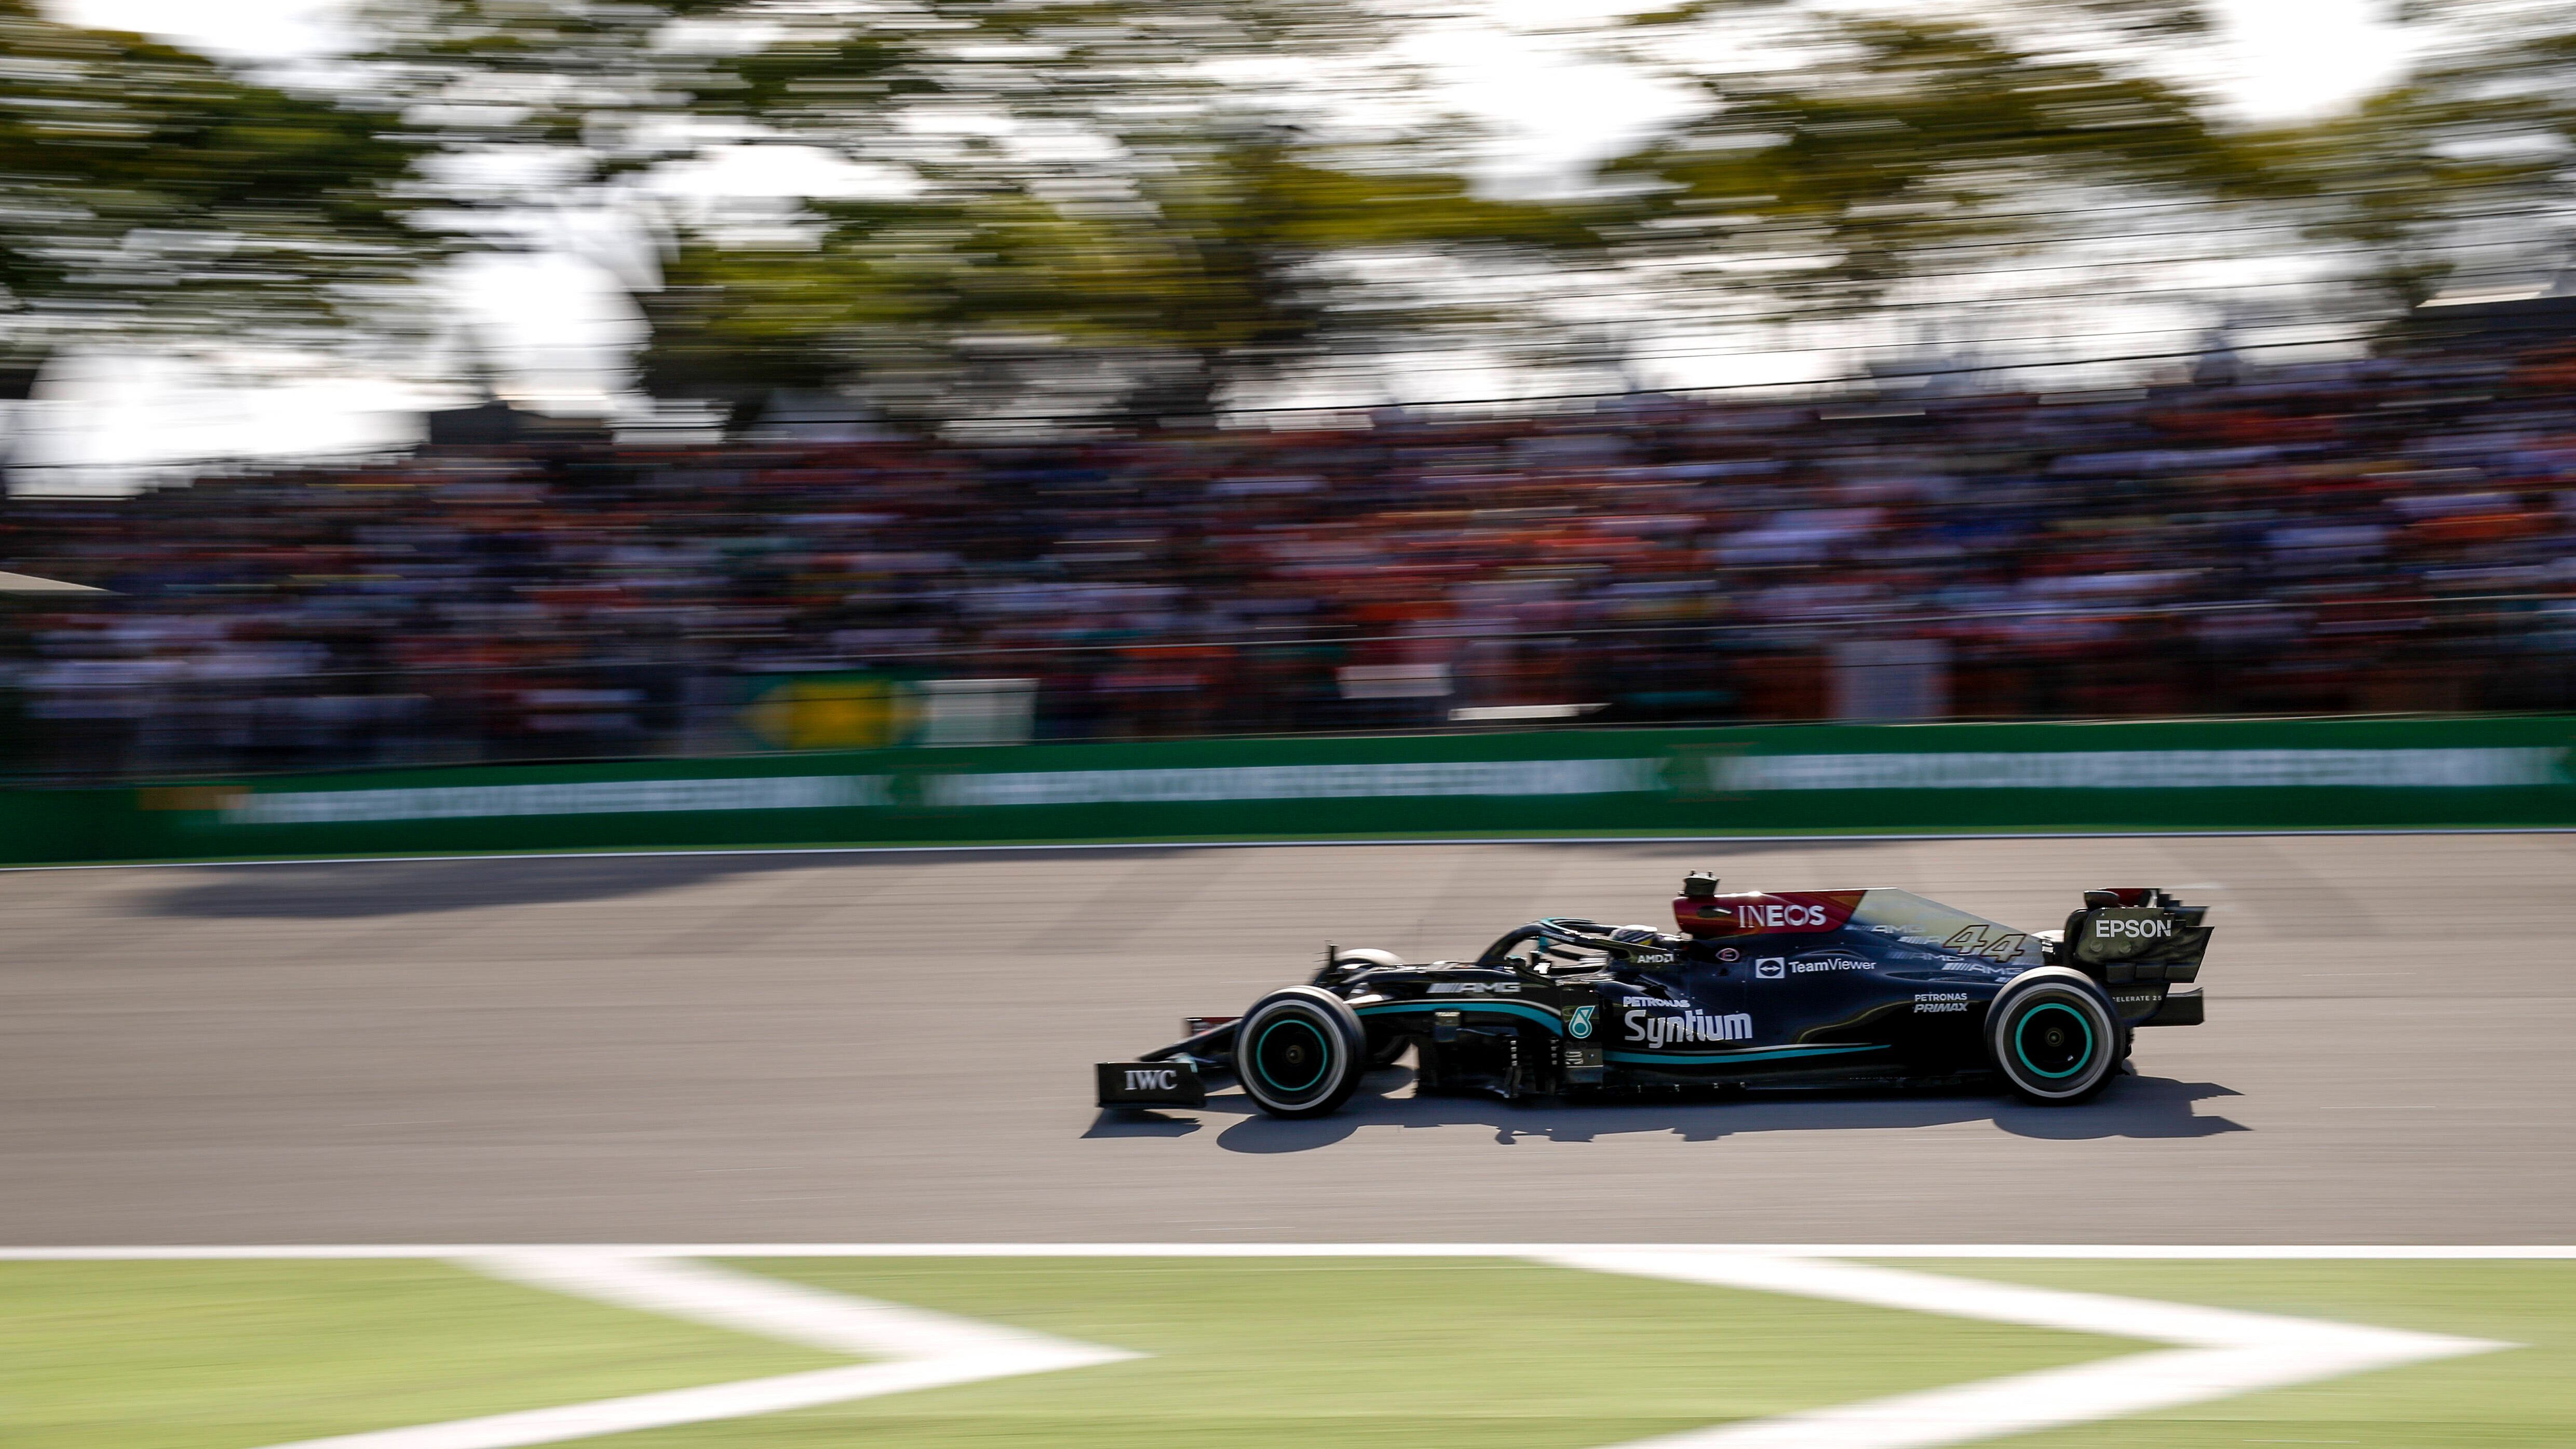 
                <strong>Hamiltons Raketenmotor lässt Red Bull staunen </strong><br>
                Vor dem Grand Prix in Brasilien hat Hamilton 19 Punkte Rückstand. Verstappen scheint der Titel kaum noch zu nehmen, doch dann schlägt Mercedes zurück. Nach einem Motorenwechsel pflügt Hamilton durch das Feld und schnappt sich - trotz harter Gegenwehr - schlussendlich auch Verstappen. Im Fokus stehen aber einmal mehr die Nebenschauplätze. Mercedes wird für einen Regelbruch im Zusammenhang mit dem DRS bestraft, Verstappen berührt - verbotenerweise - nach dem Qualifying den Heckflügel vom Mercedes. Hinter den Kulissen folgt eine Stichelei nach der anderen. Das Ganze weckt den Löwen in Hamilton (Teamchef Toto Wolff), der in Sprint- und Hauptrennen insgesamt 25 Strafplätze gutmacht.
              